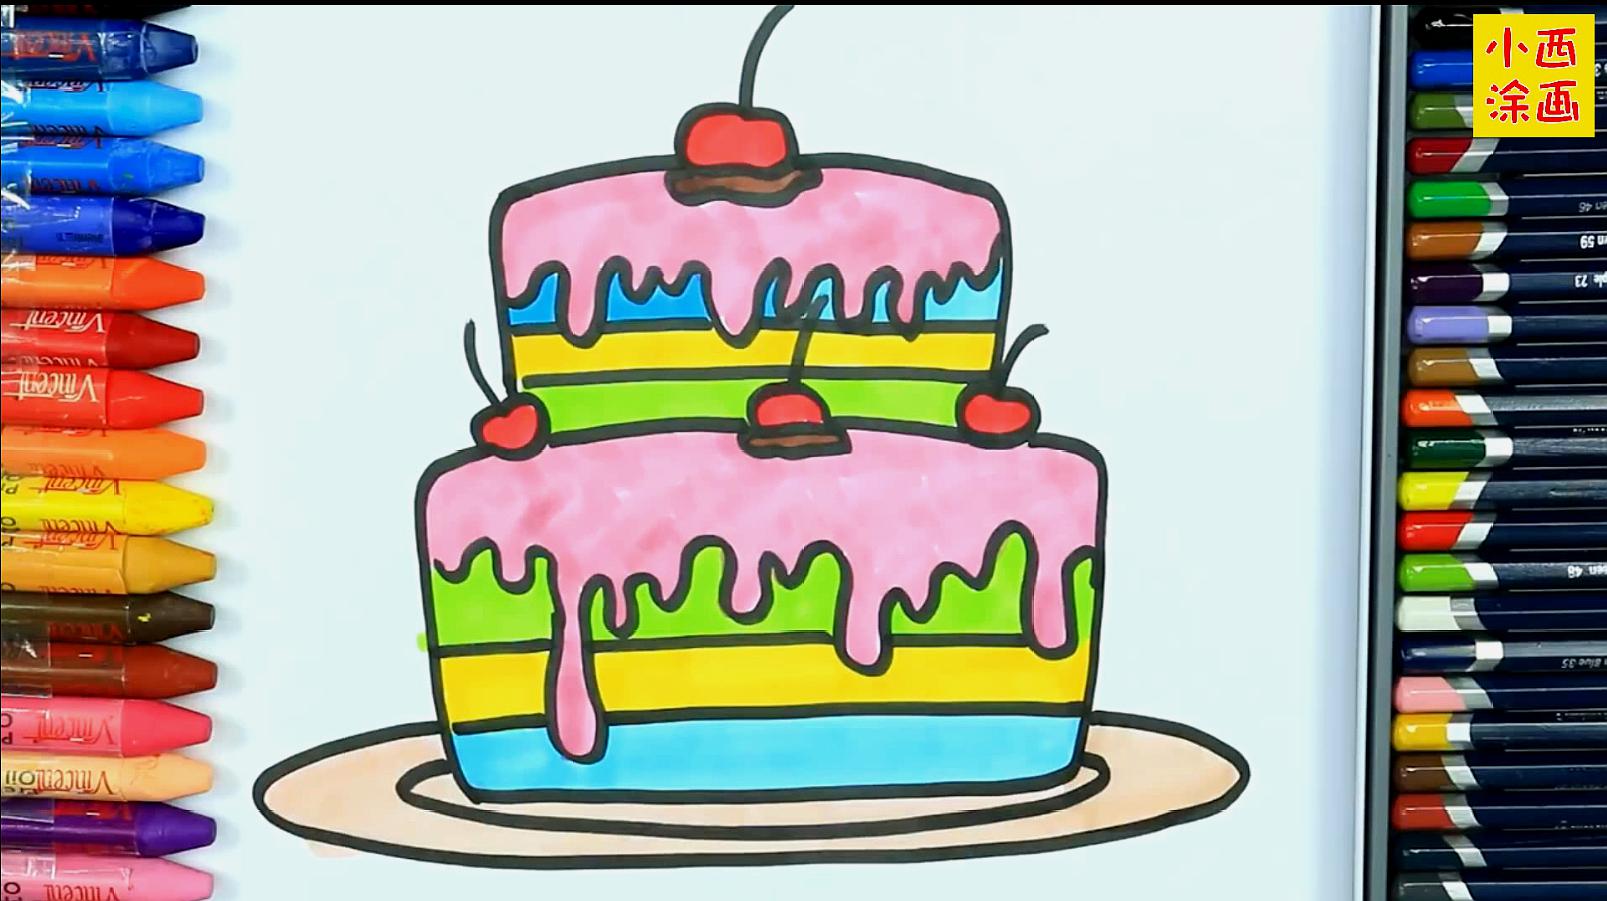 创意简笔画,画双层樱桃巧克力口味蛋糕,色彩早教益智视频